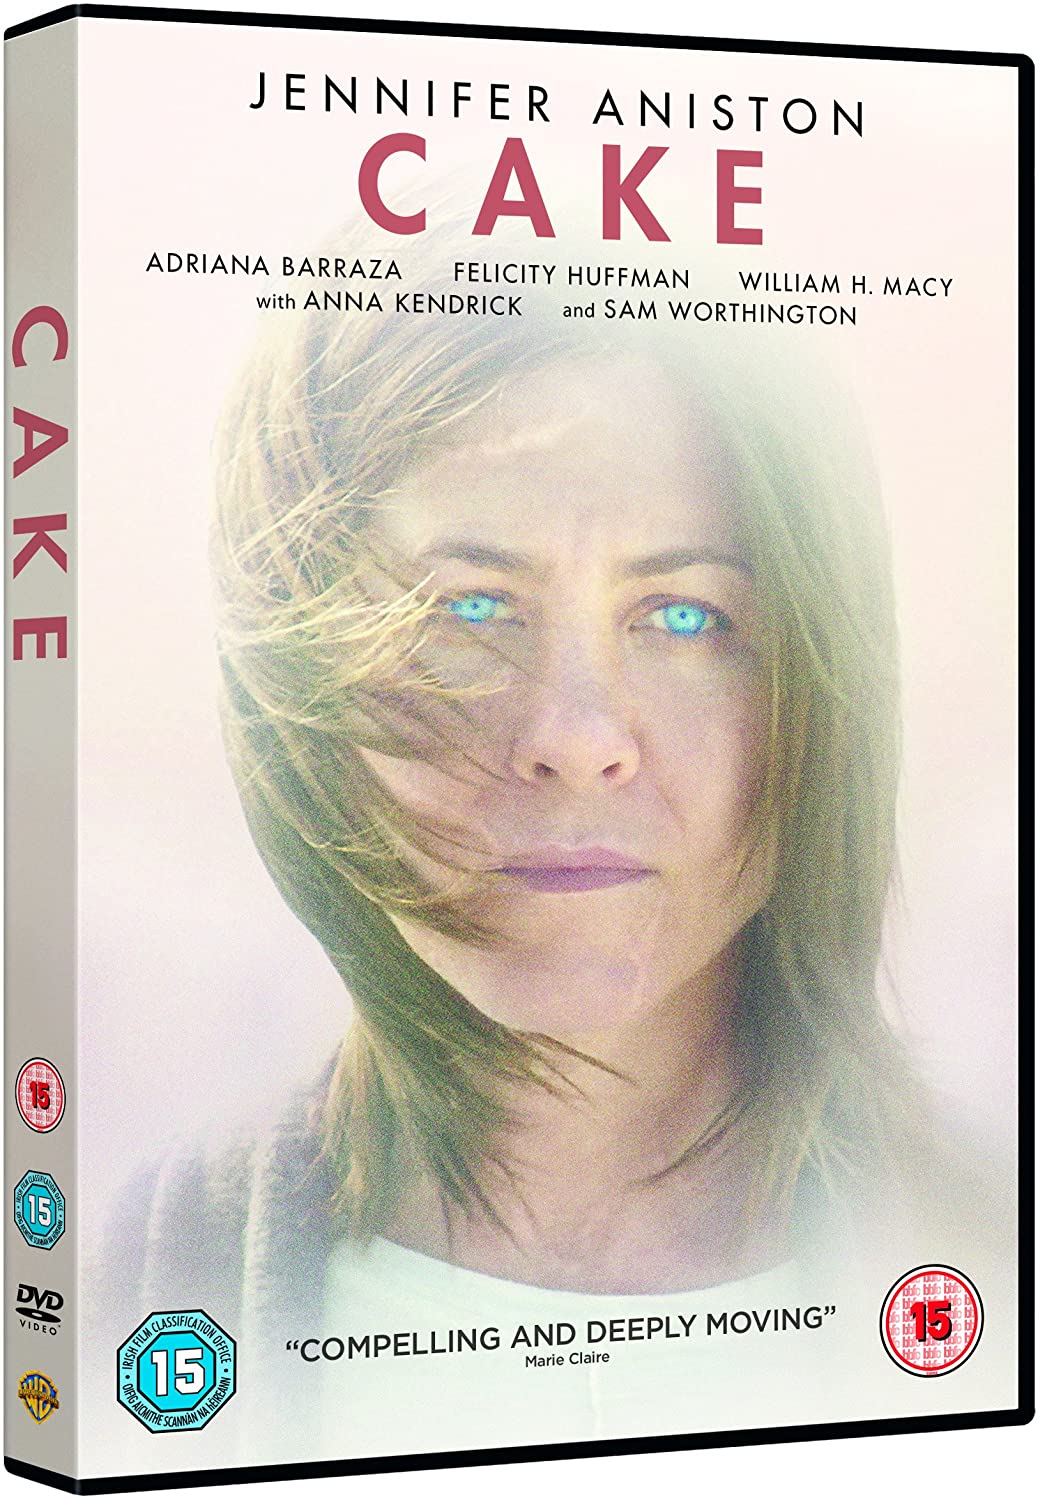 CAKE S) [2015]  -Drama [DVD]